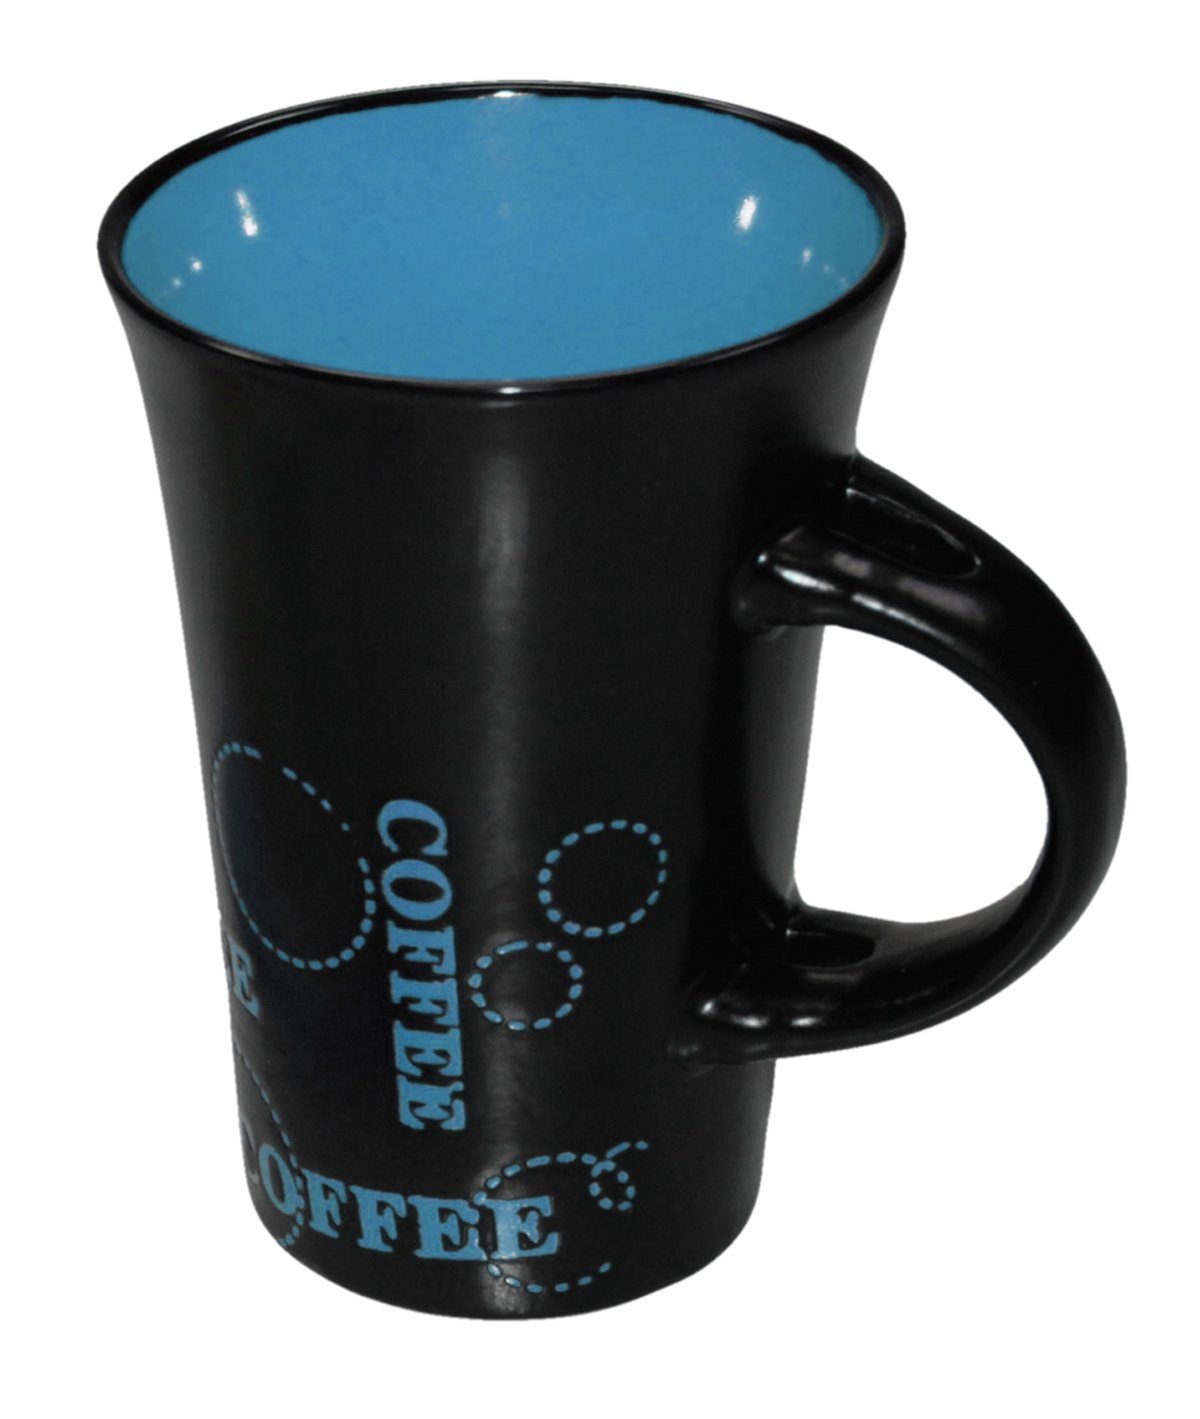 Haus und Deko Geschirr-Set Keramik Kaffeebecher Kaffeetasse schwarz bunt XL Tasse Becher passend (1-tlg), Keramik